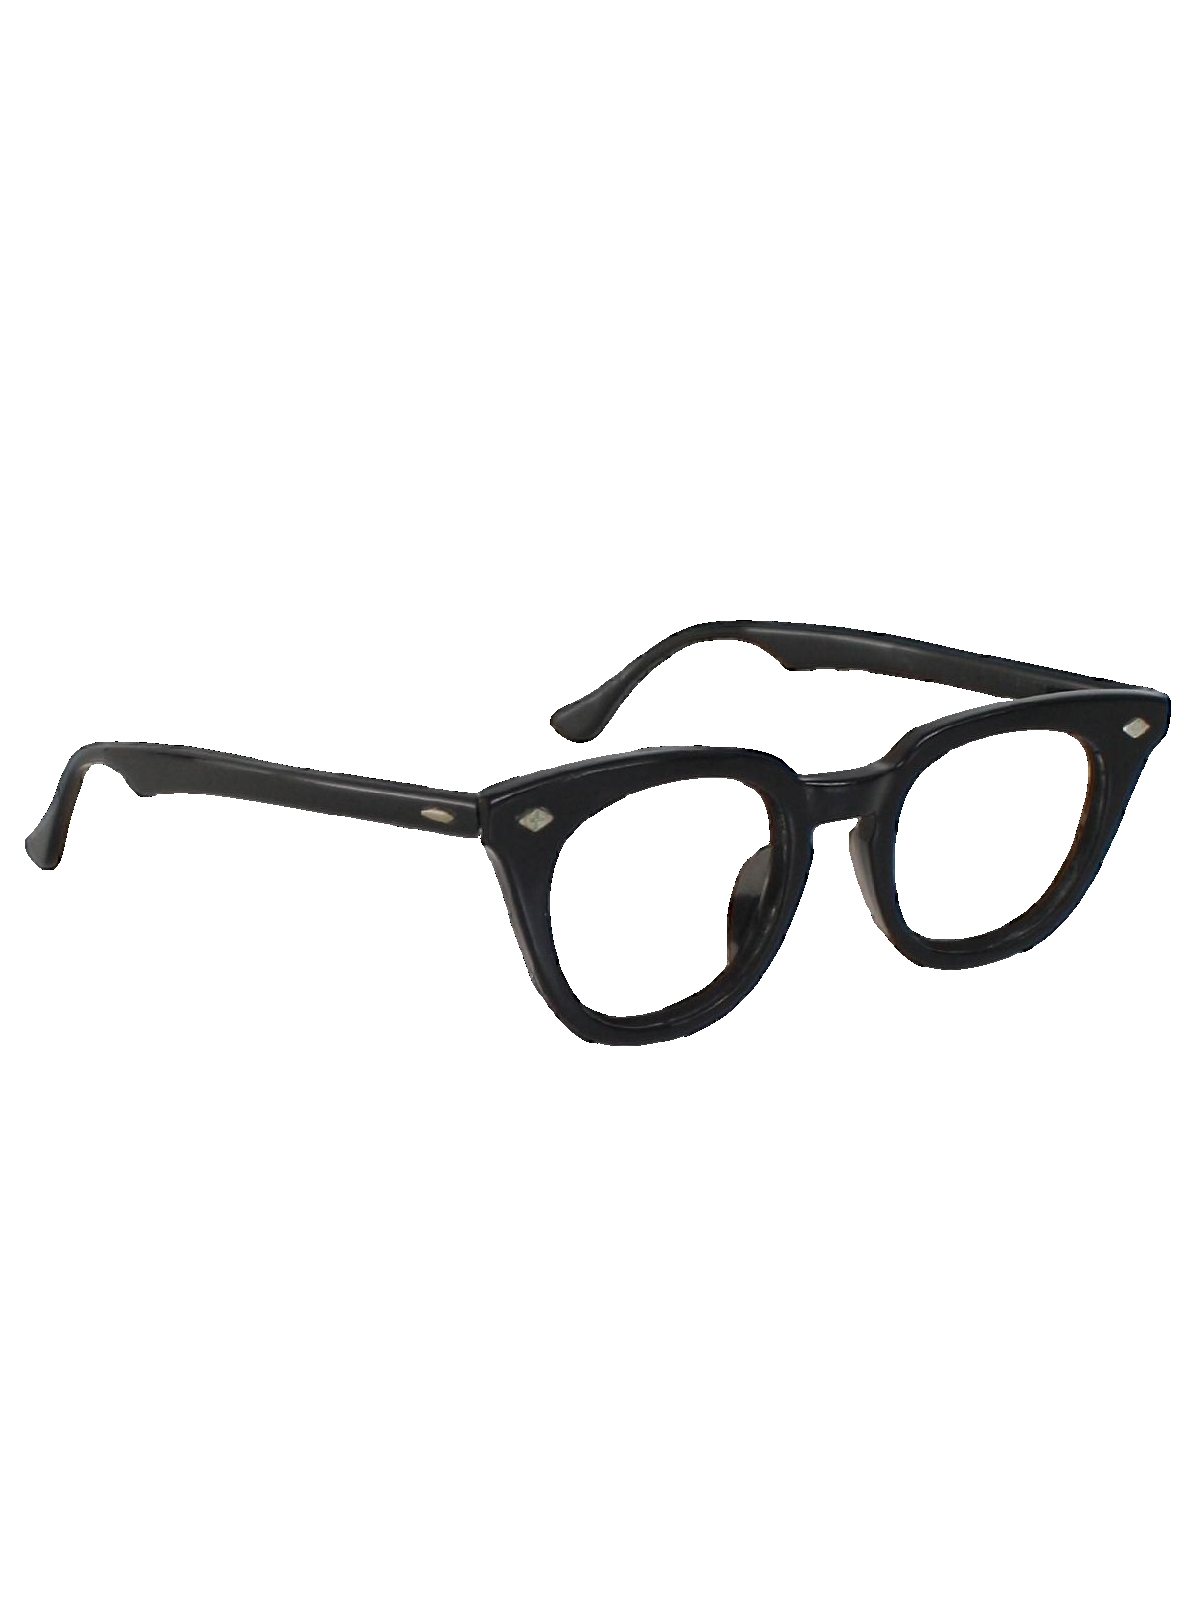 1950s Sunglasses & 50s Glasses | Retro Cat Eye Sunglasses